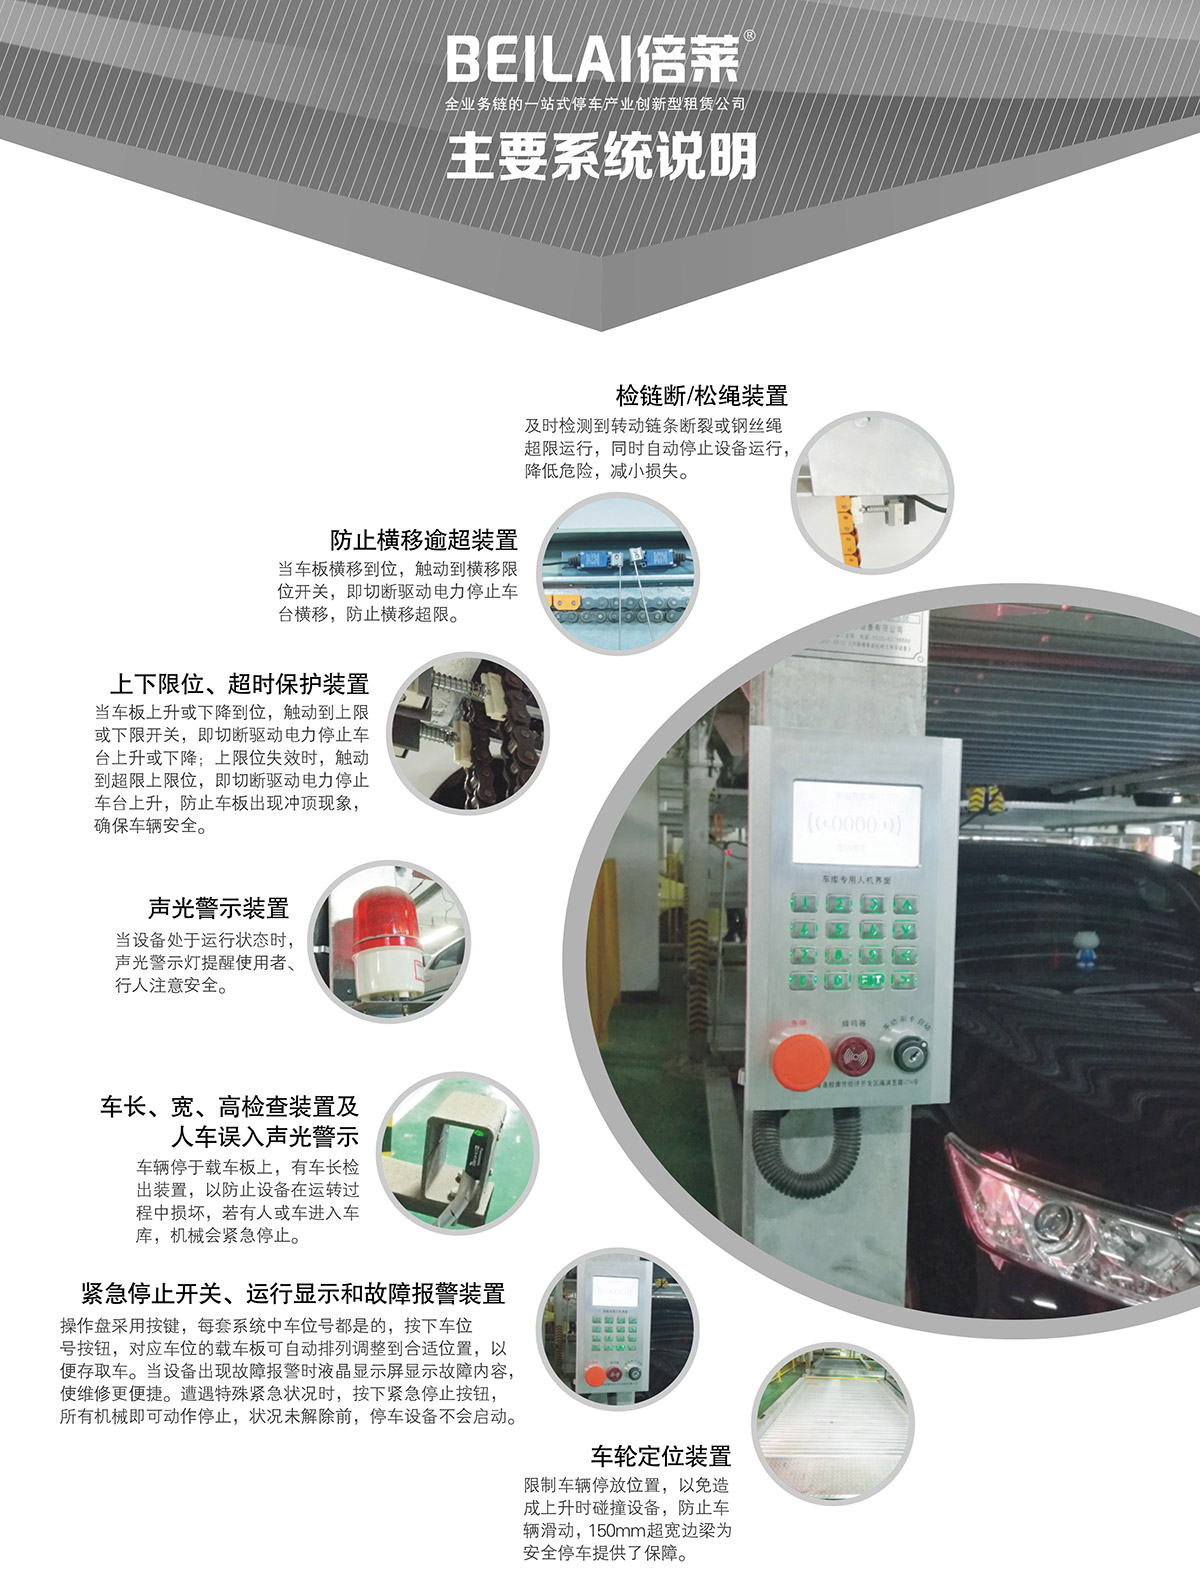 重庆负一正二地坑PSH3D1三层升降横移类机械式立体停车设备主要系统说明.jpg